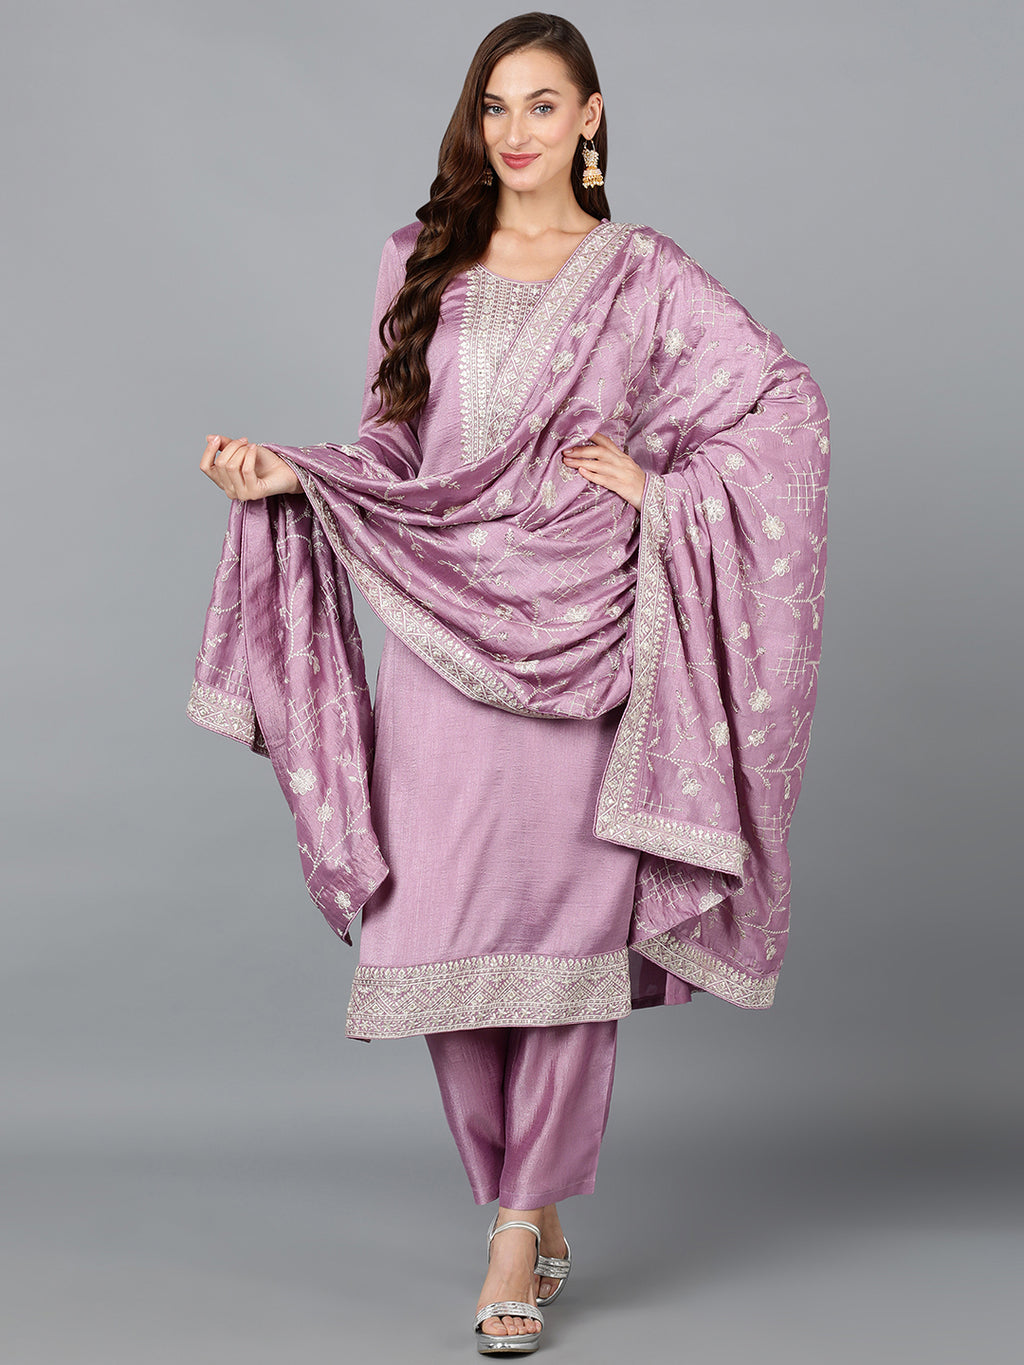 Women's Indian Ethnic Wear Sets Wholesale -Buy on Tradyl!